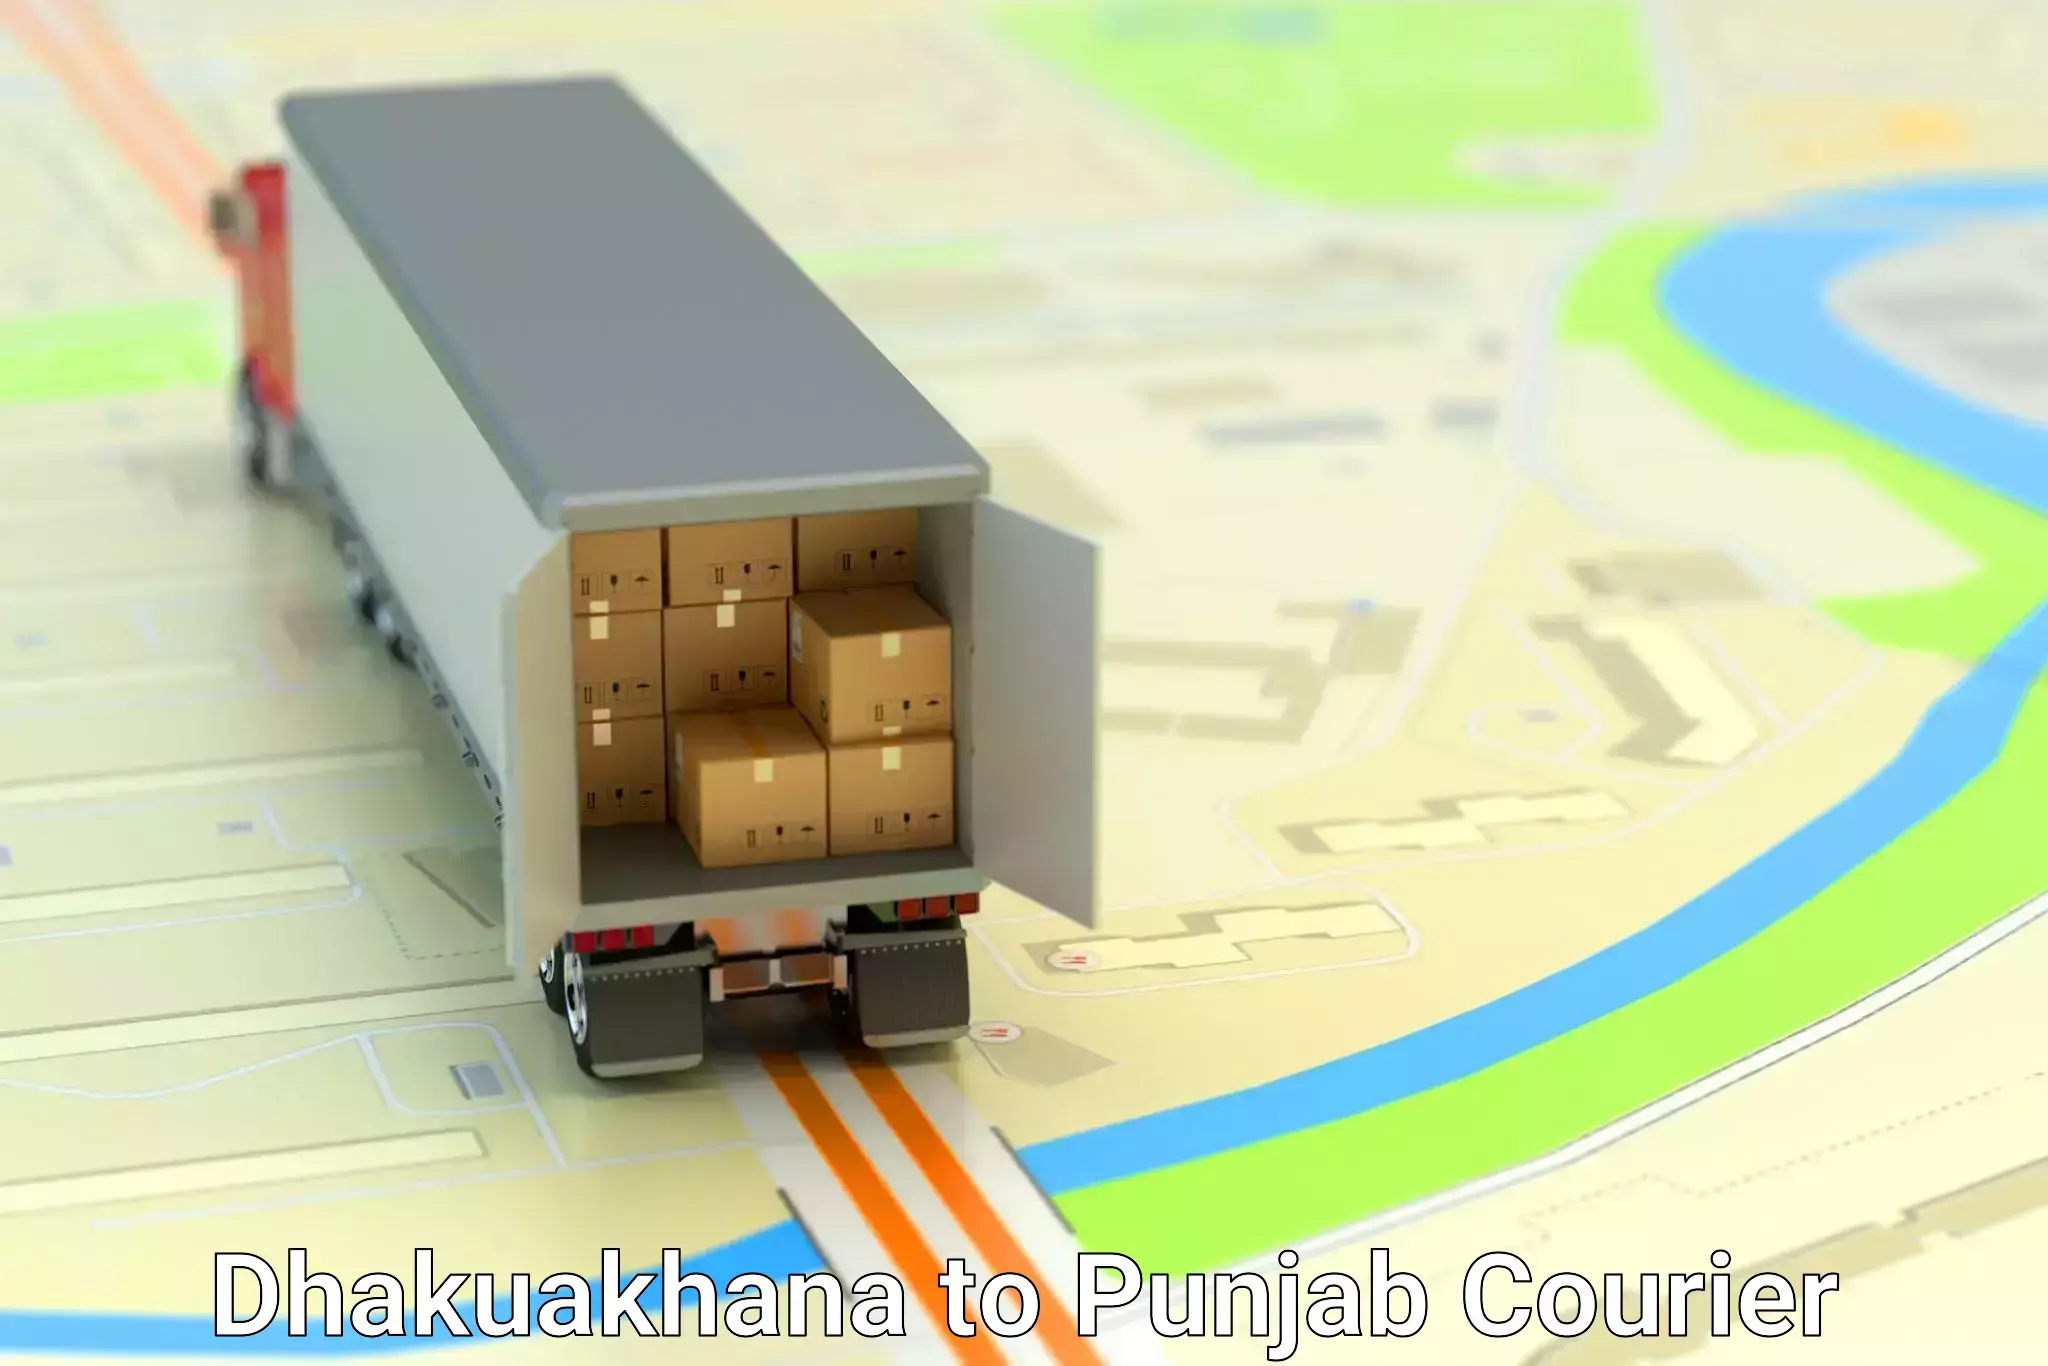 Global delivery options Dhakuakhana to Punjab